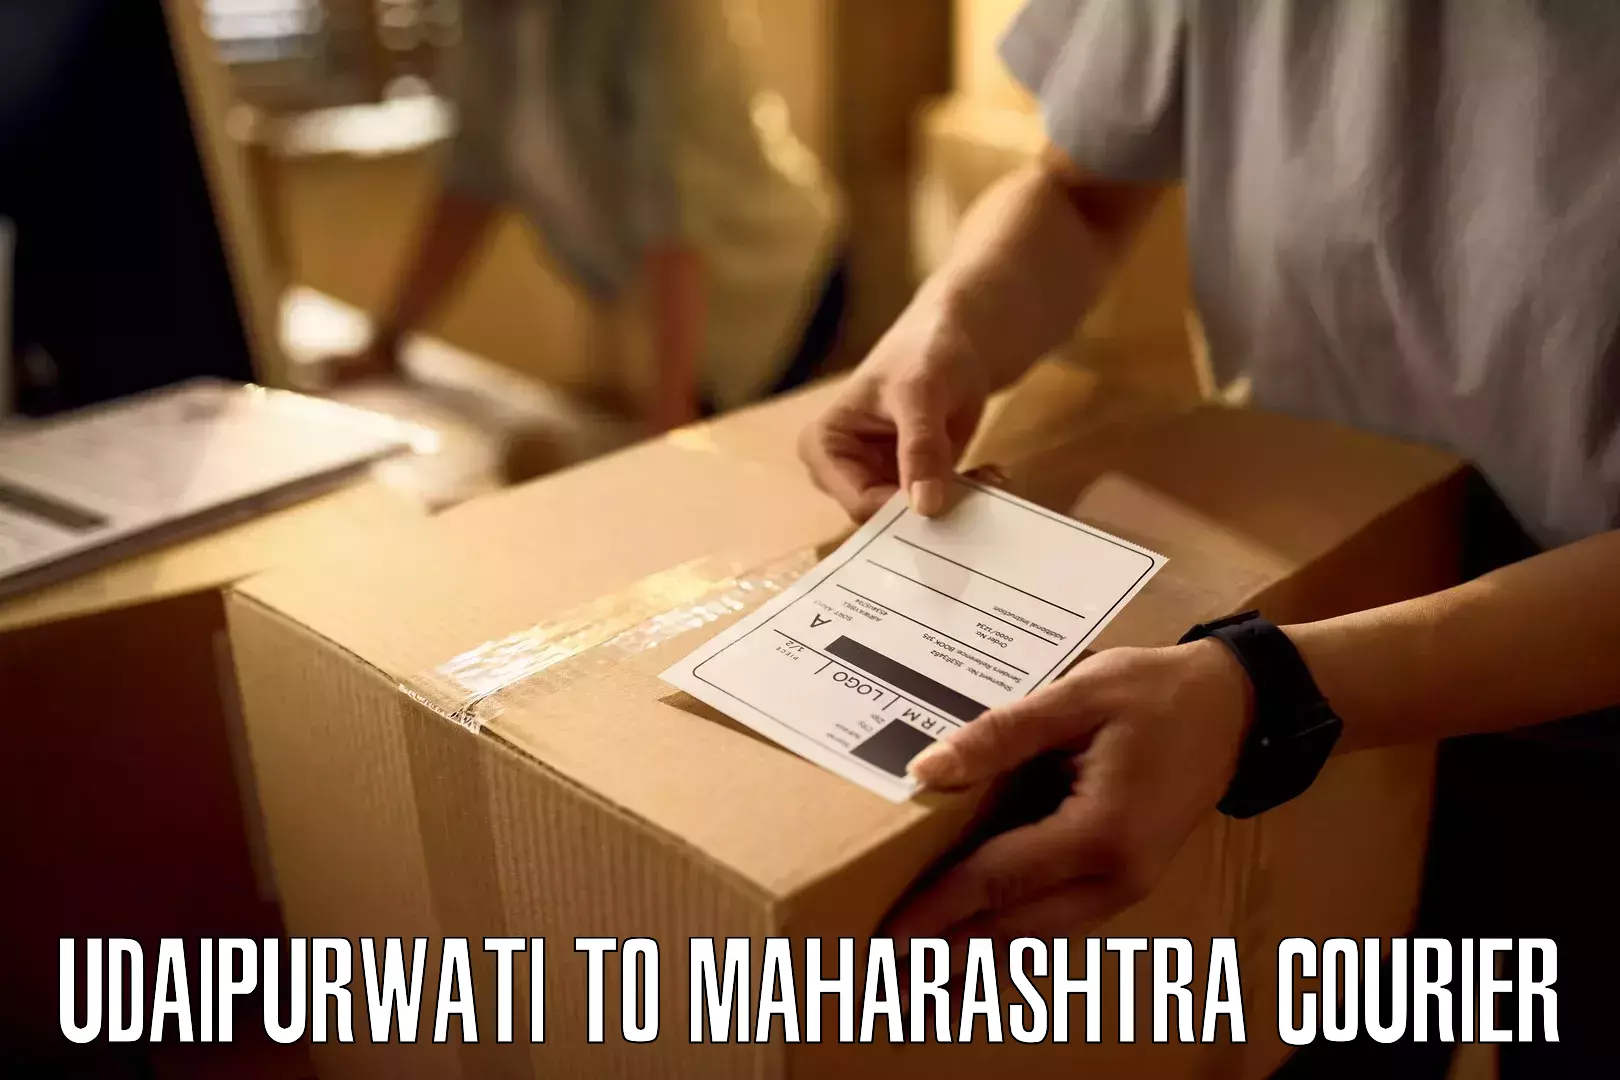 Efficient parcel tracking Udaipurwati to Worli